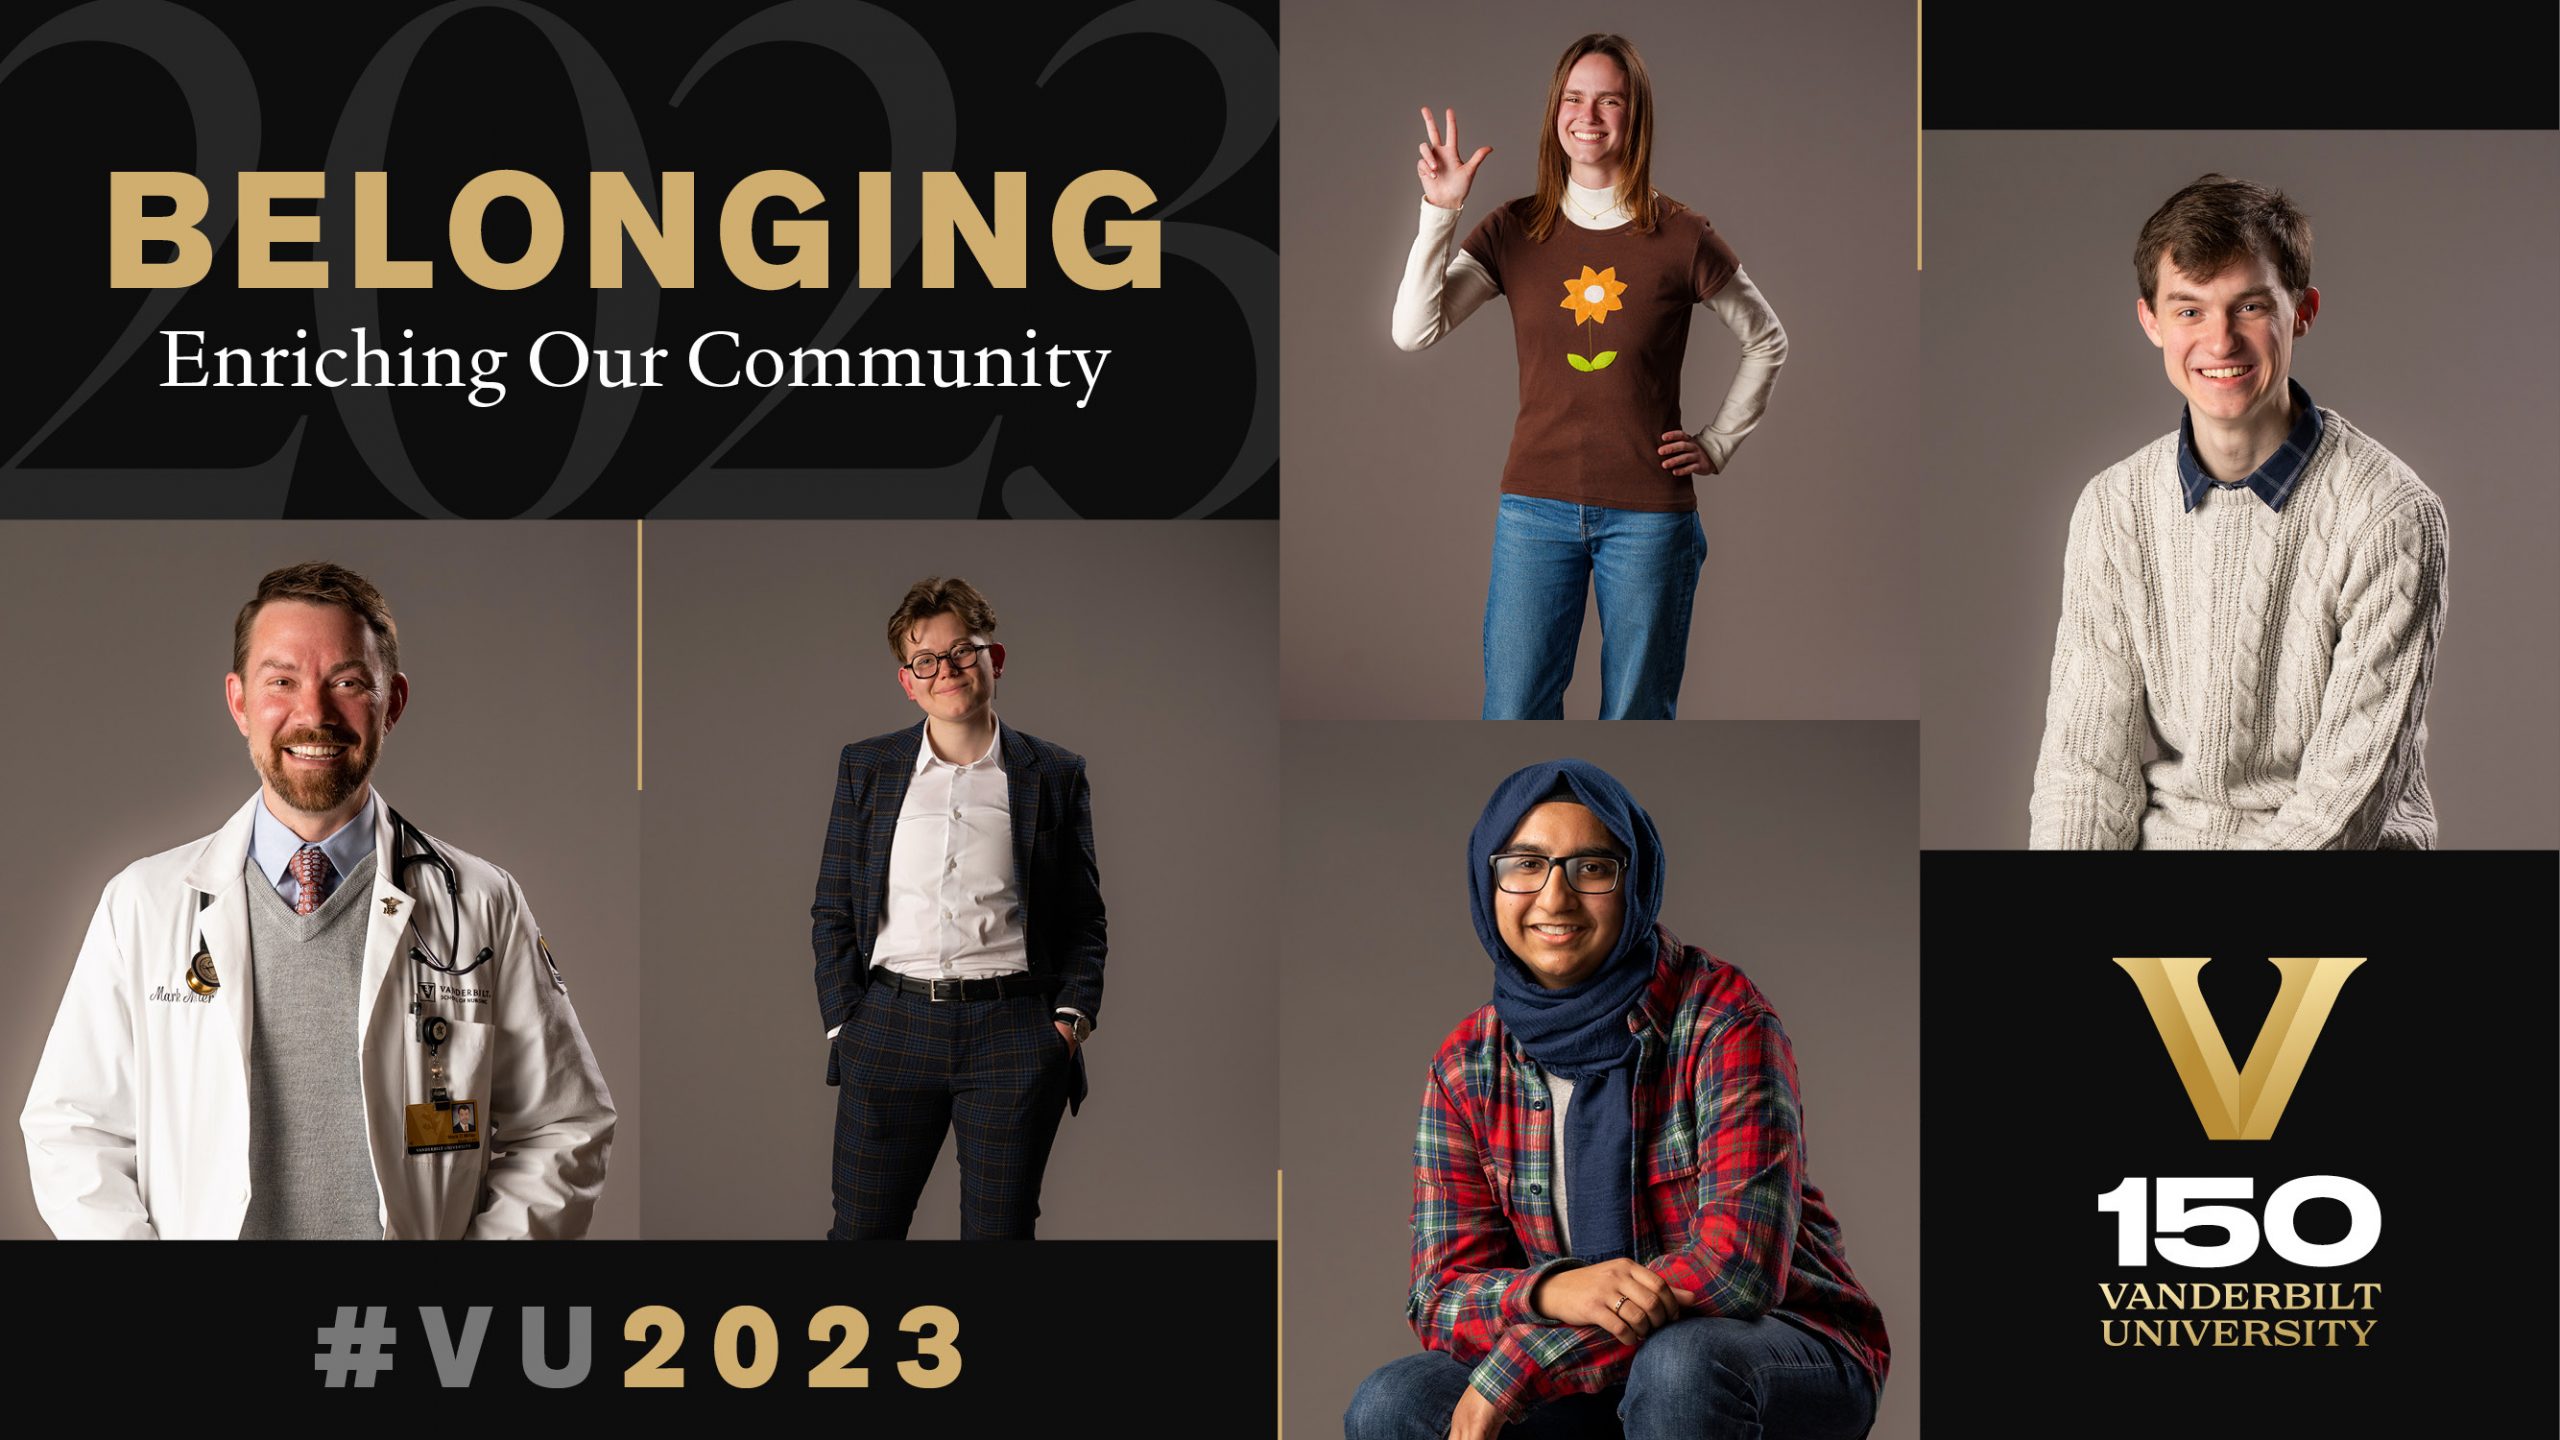 WATCH: Class of 2023 students build belonging, enrich Vanderbilt community